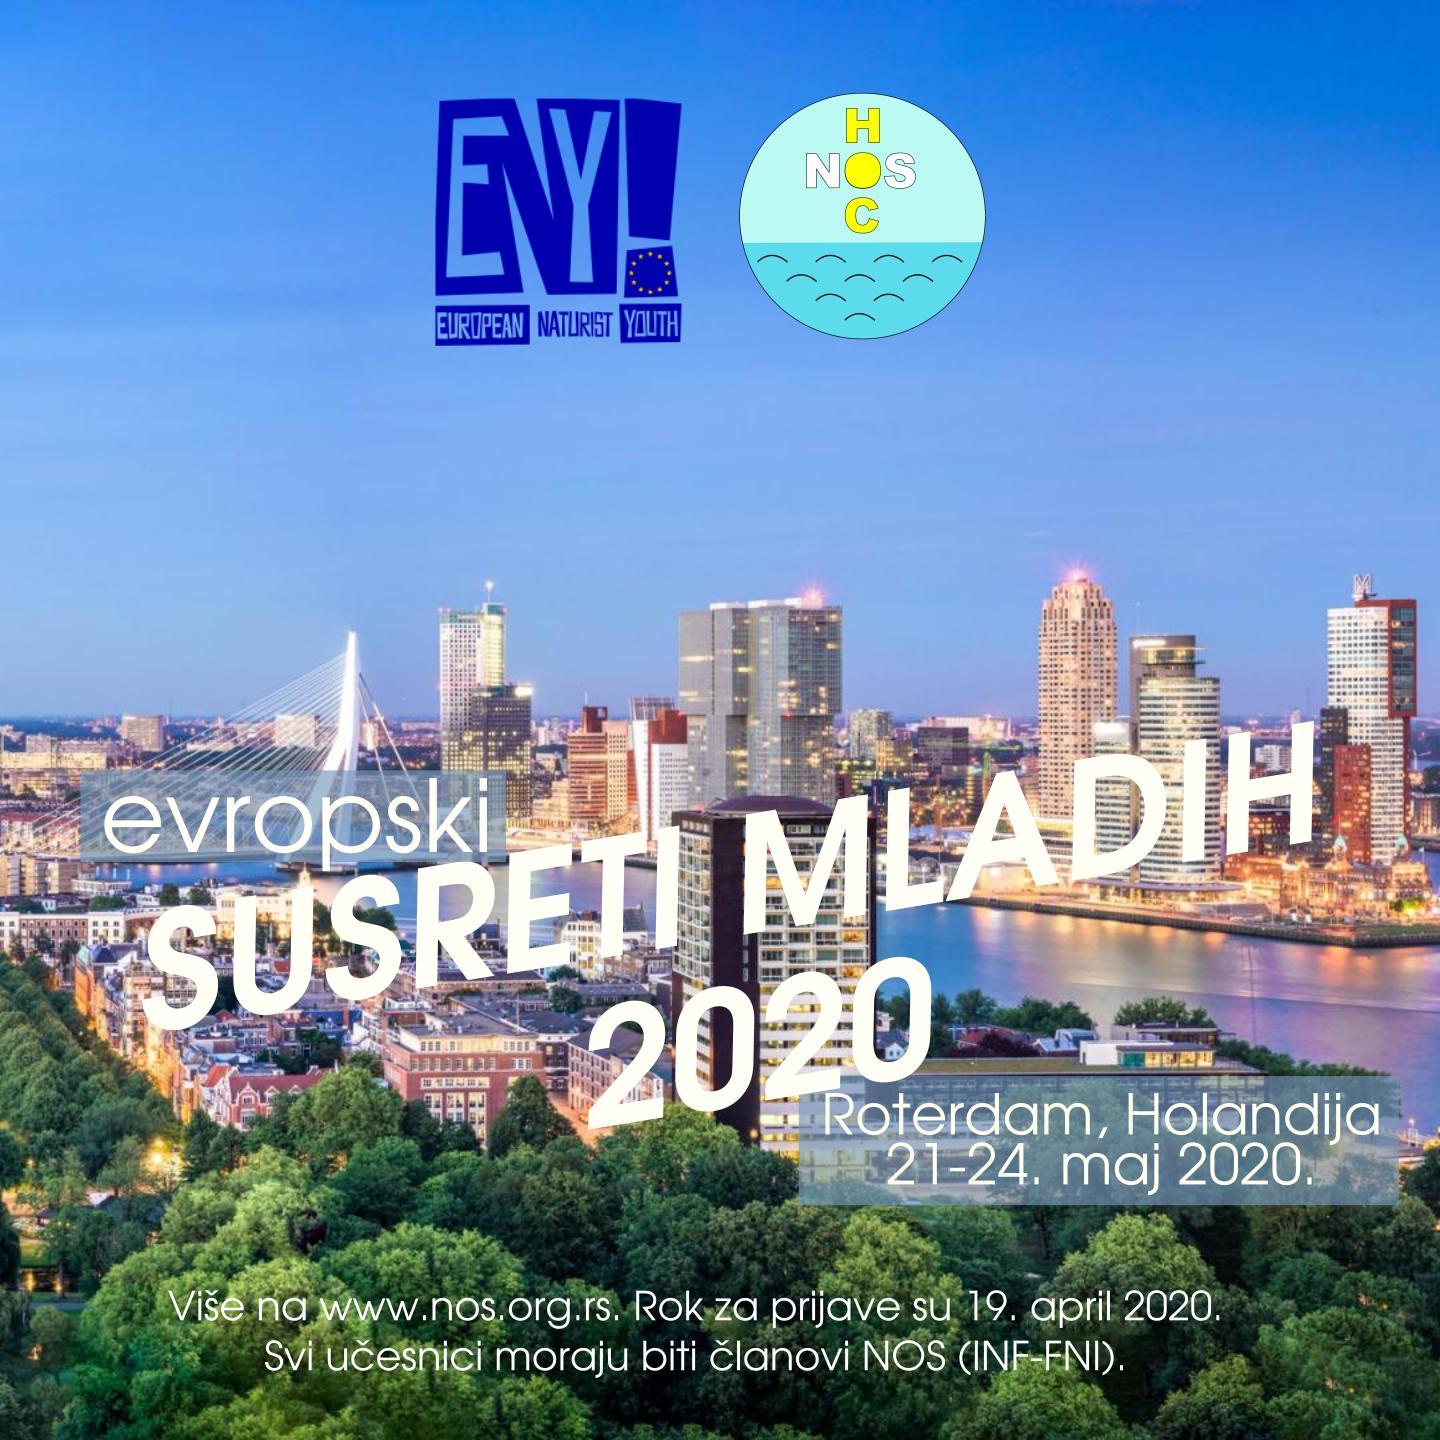 Evropski susreti mladih 2020. u Holandiji - OTKAZANO